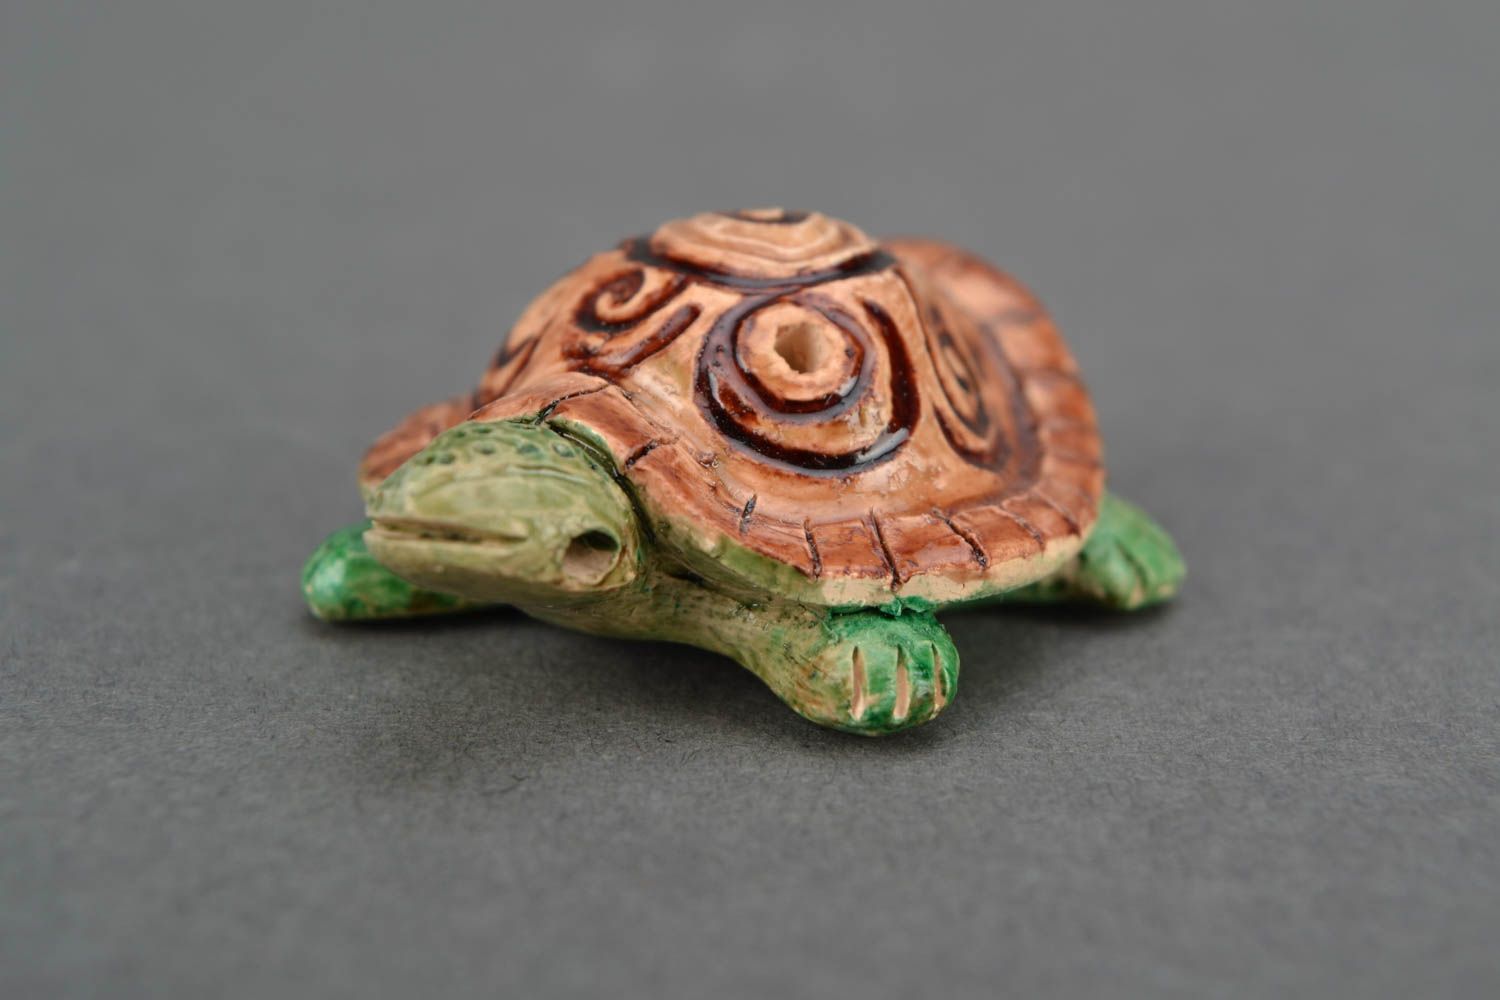 Sifflet instrument de musique en forme de tortue miniature peint original photo 1